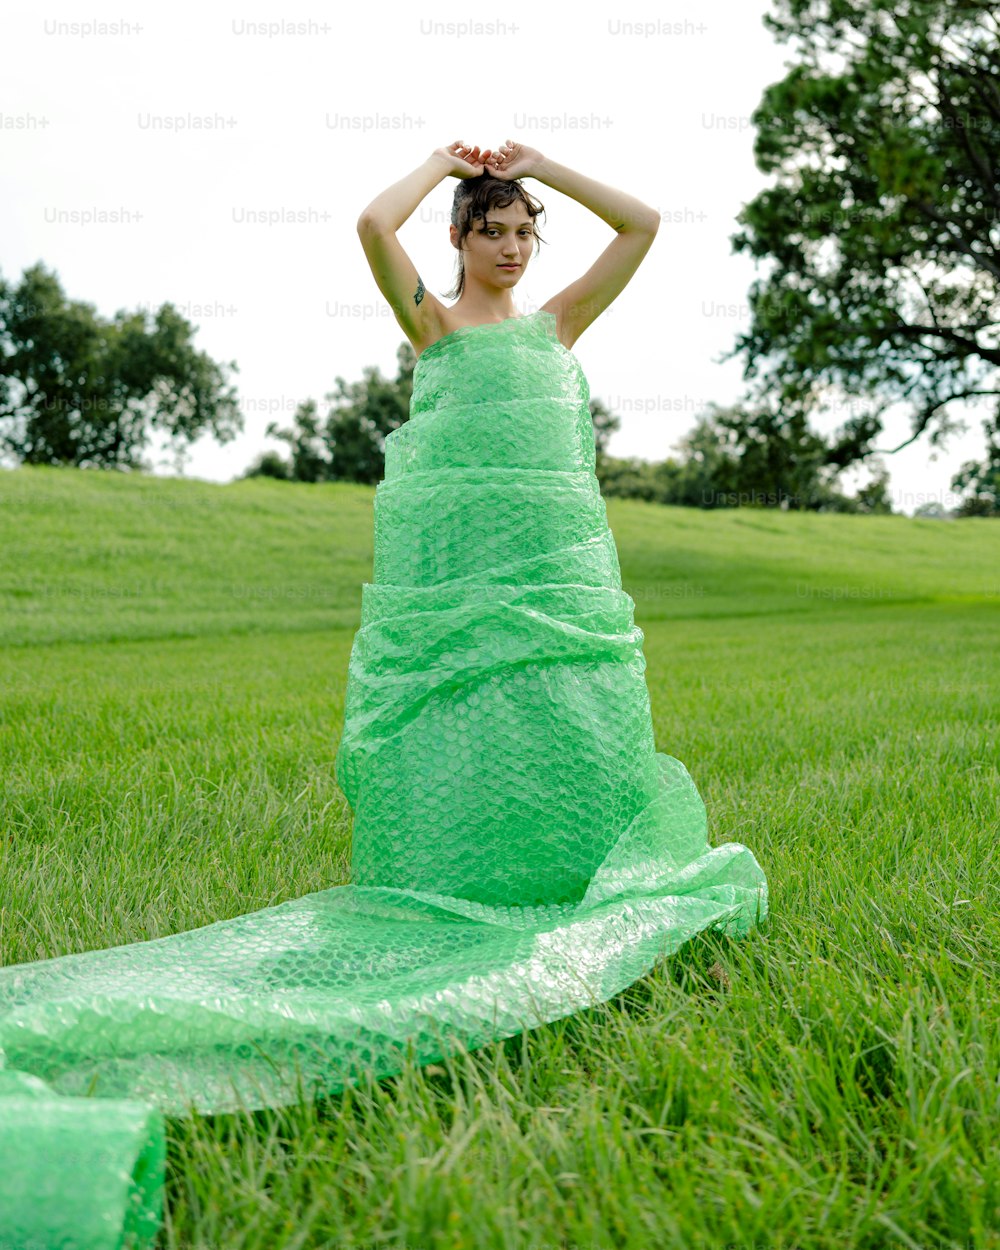 Una mujer con un vestido verde sentada en la hierba